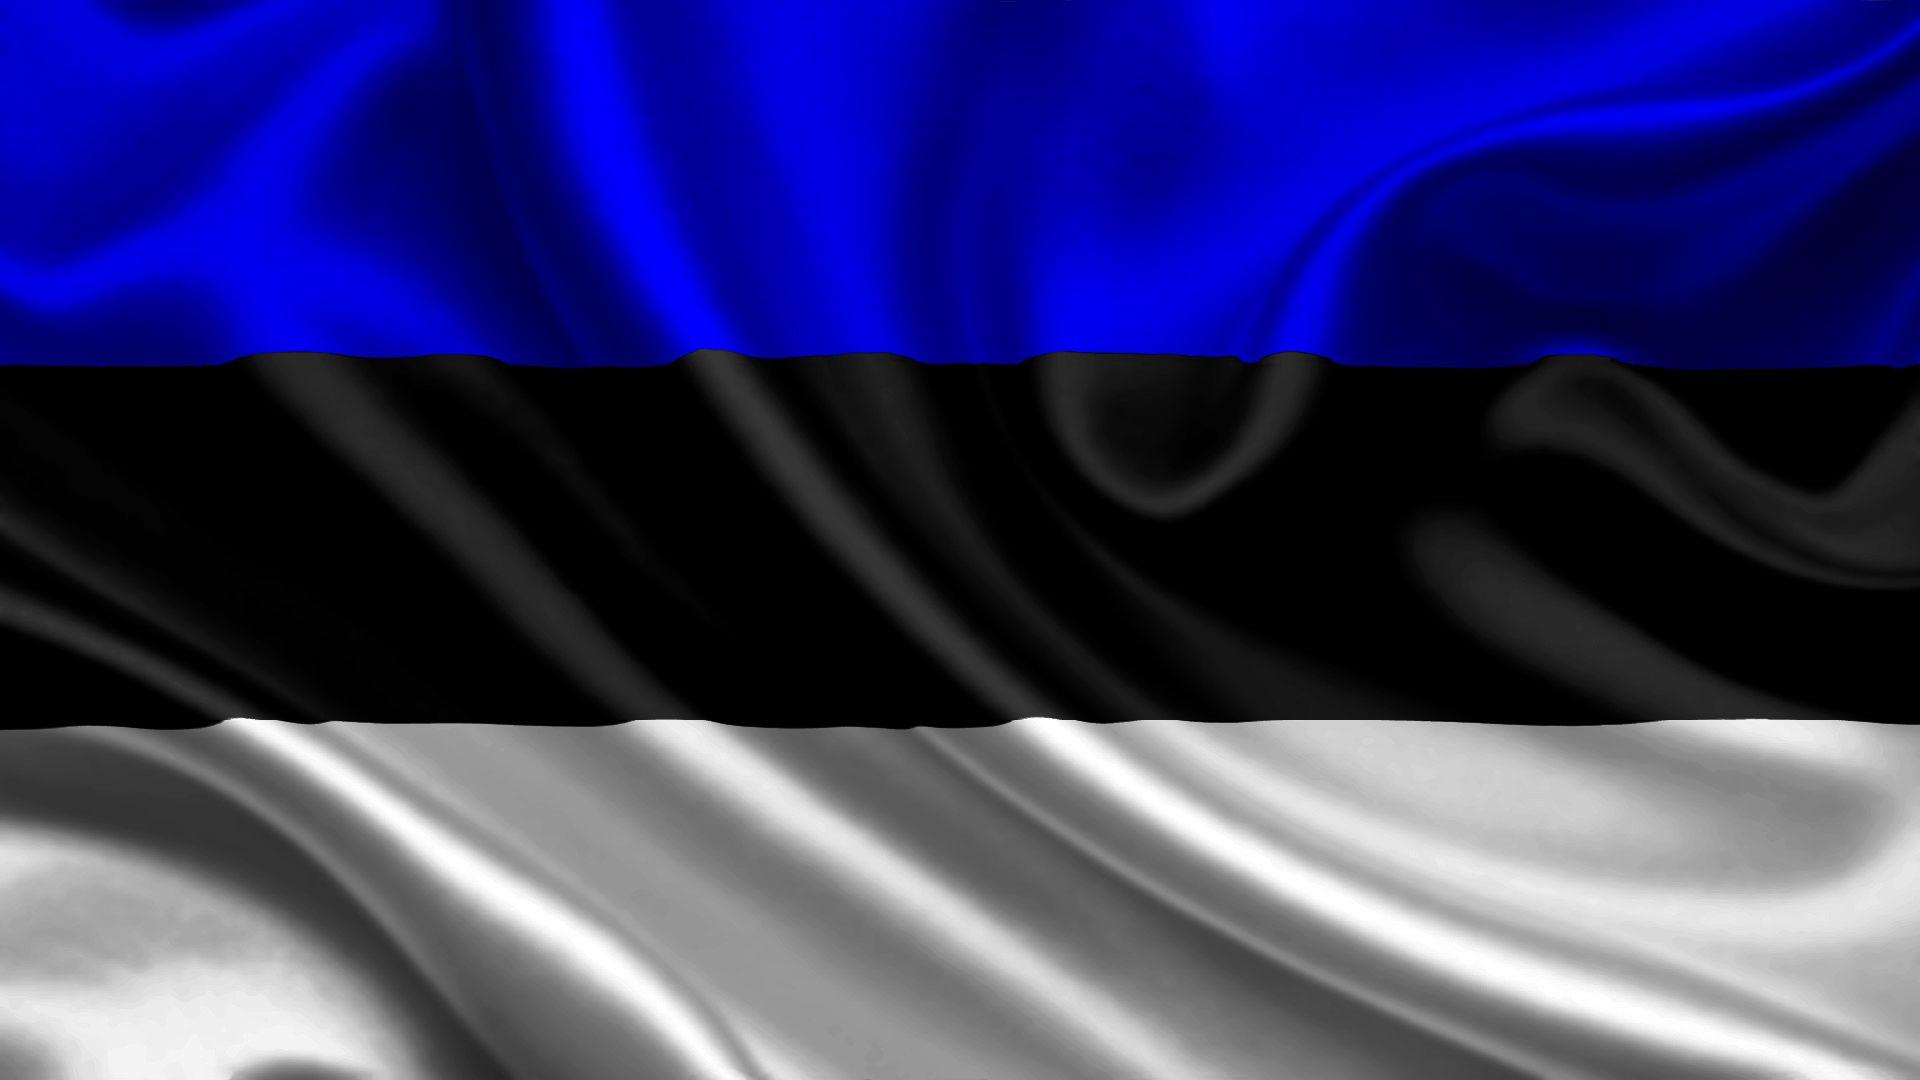 HD Estonia Flag Wallpaper